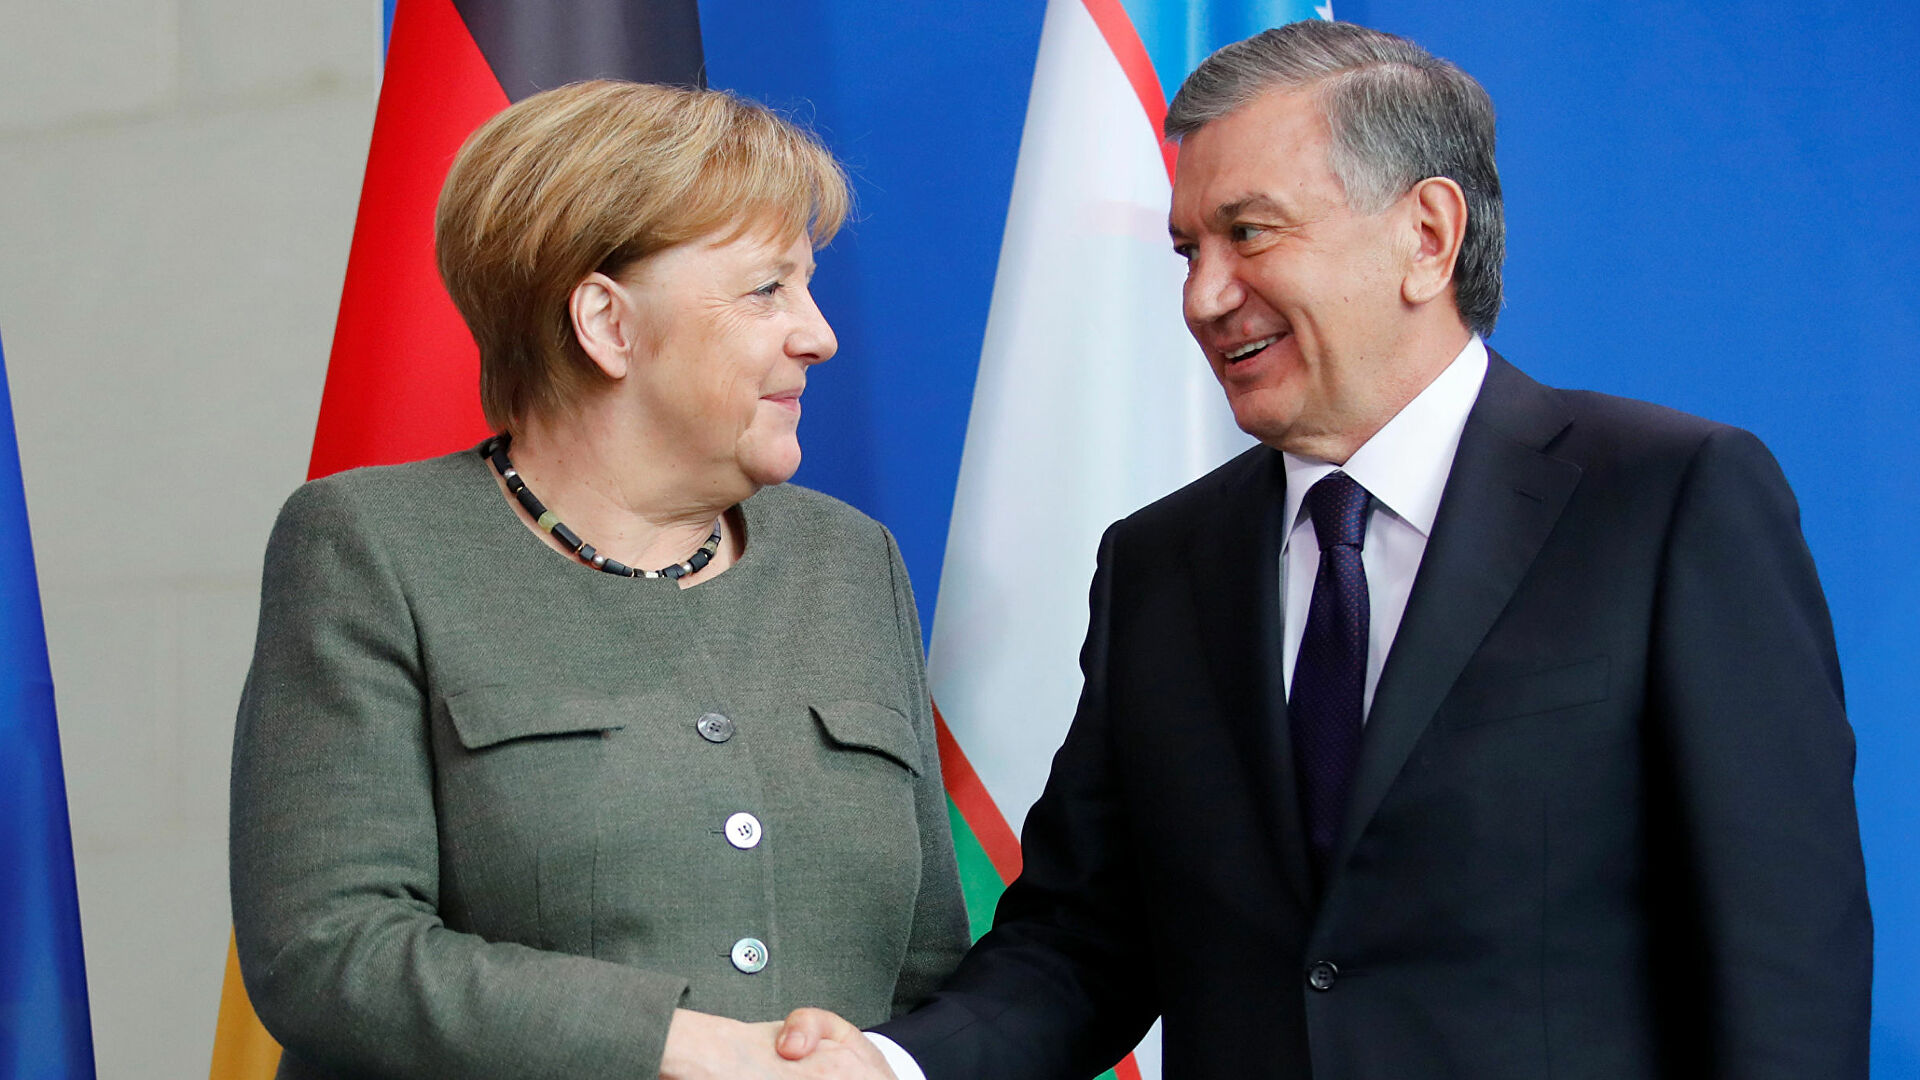 Шавкат Мирзиёев и Ангела Меркель обсудили по телефону ситуацию с Афганистаном